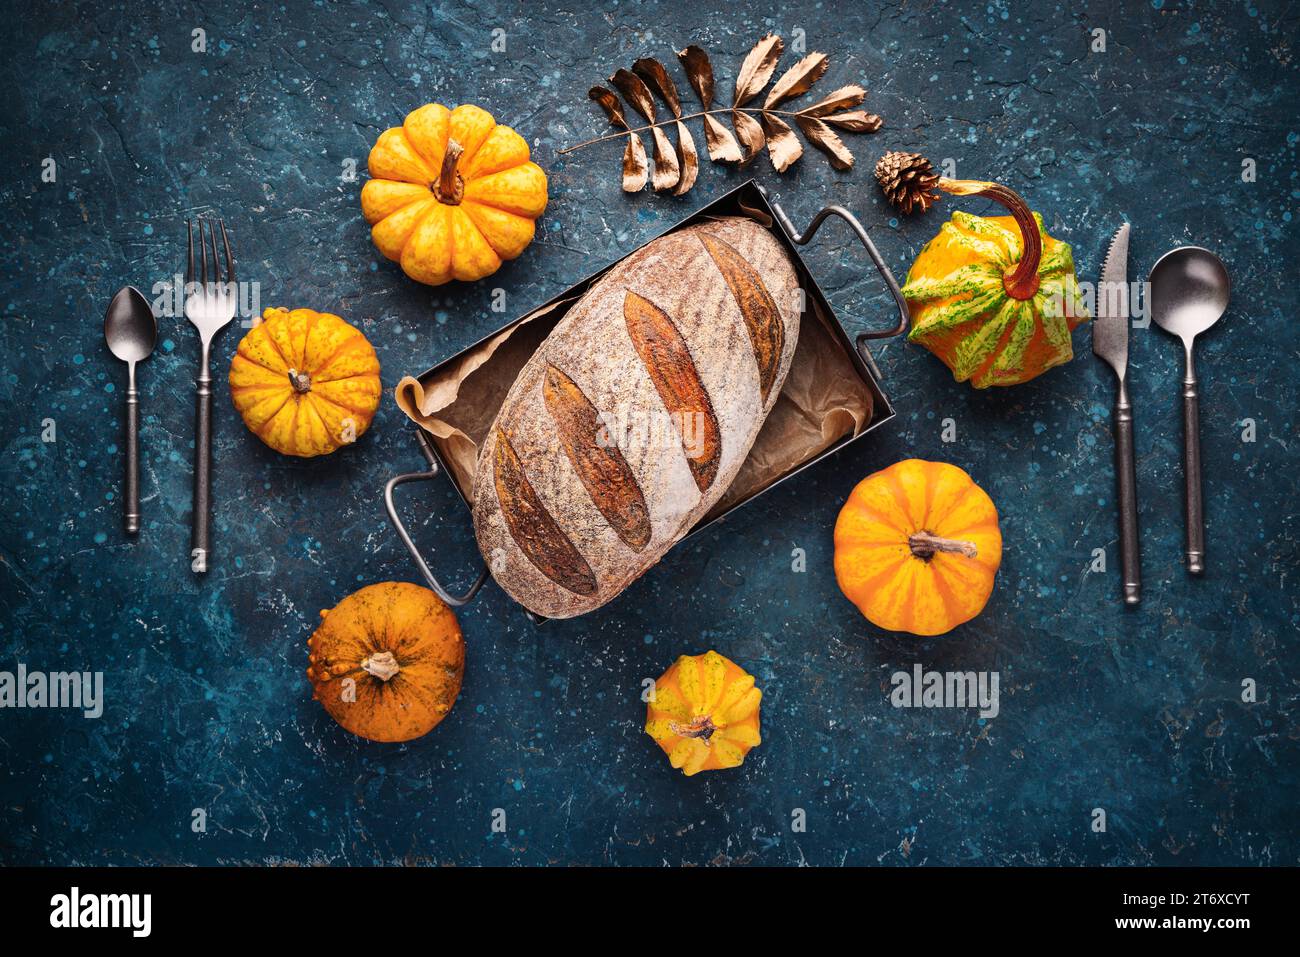 Horno de pan de masa madre crujiente hecho en casa con trigo, carbón activado, calabaza y especias de cúrcuma y sazone los alimentos de otoño en la cocina Foto de stock